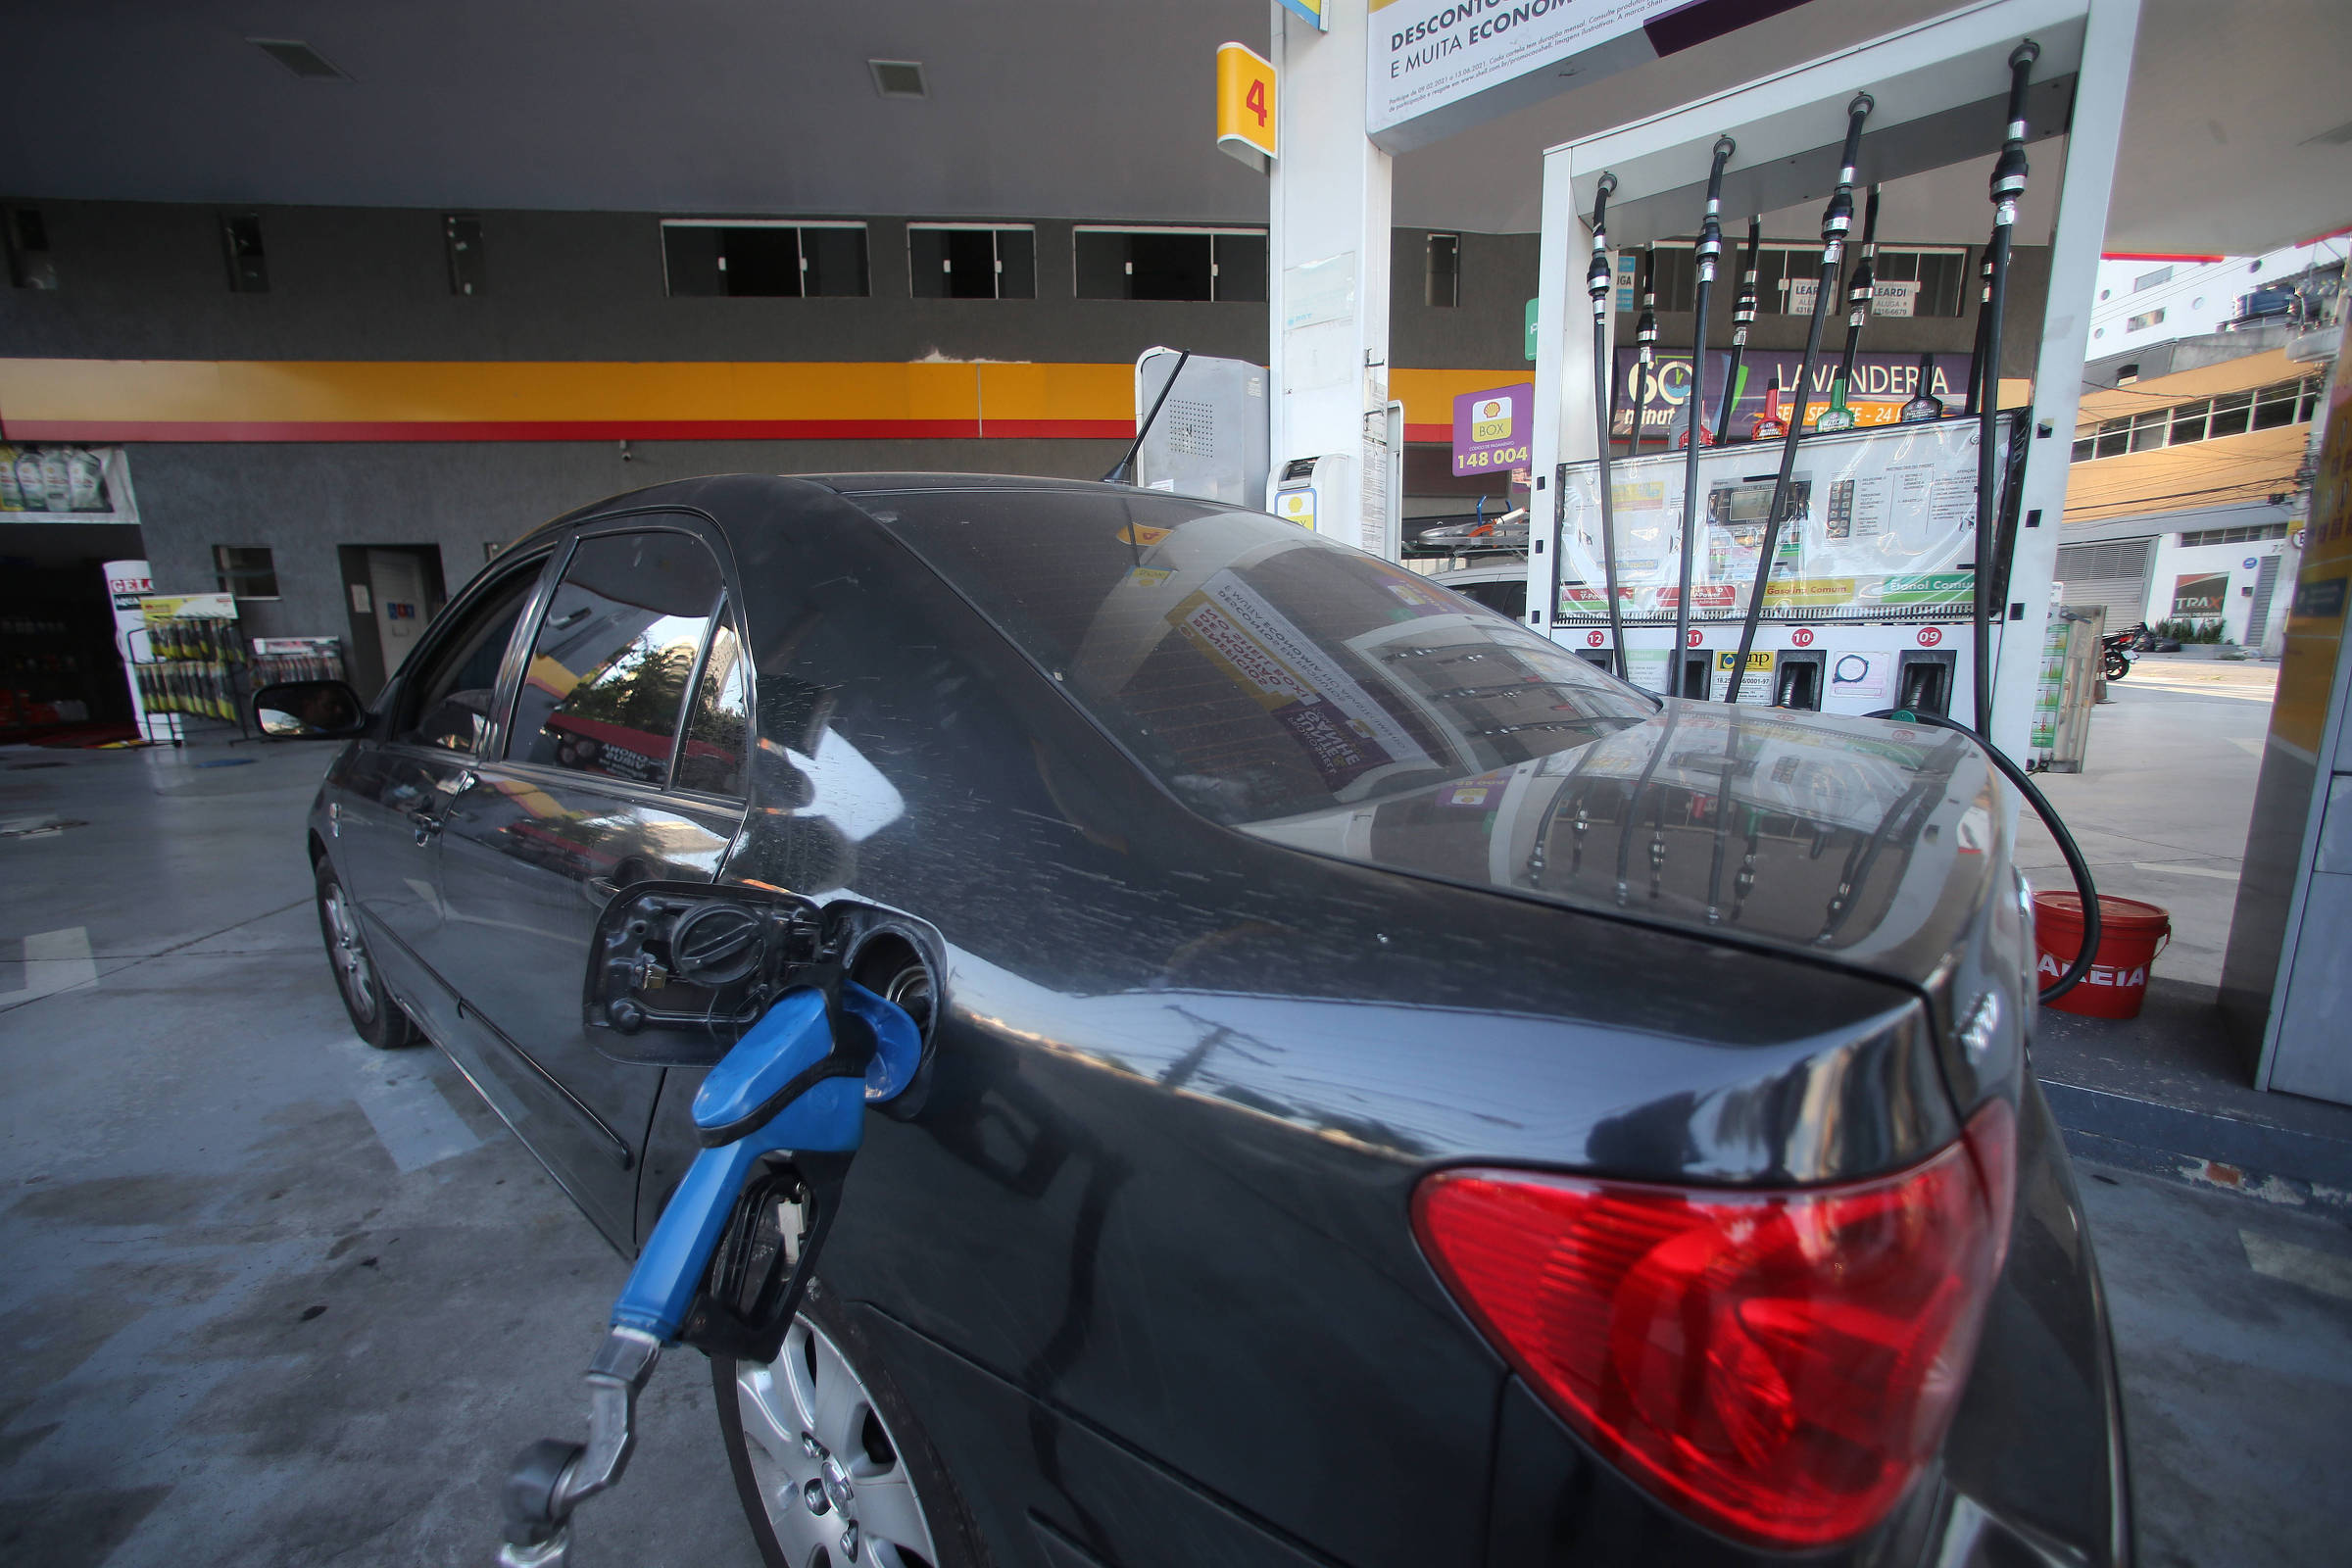 Preço médio da gasolina chega a R$ 7,47 após mega-aumento da Petrobras, diz  ValeCard - 14/03/2022 - Mercado - Folha